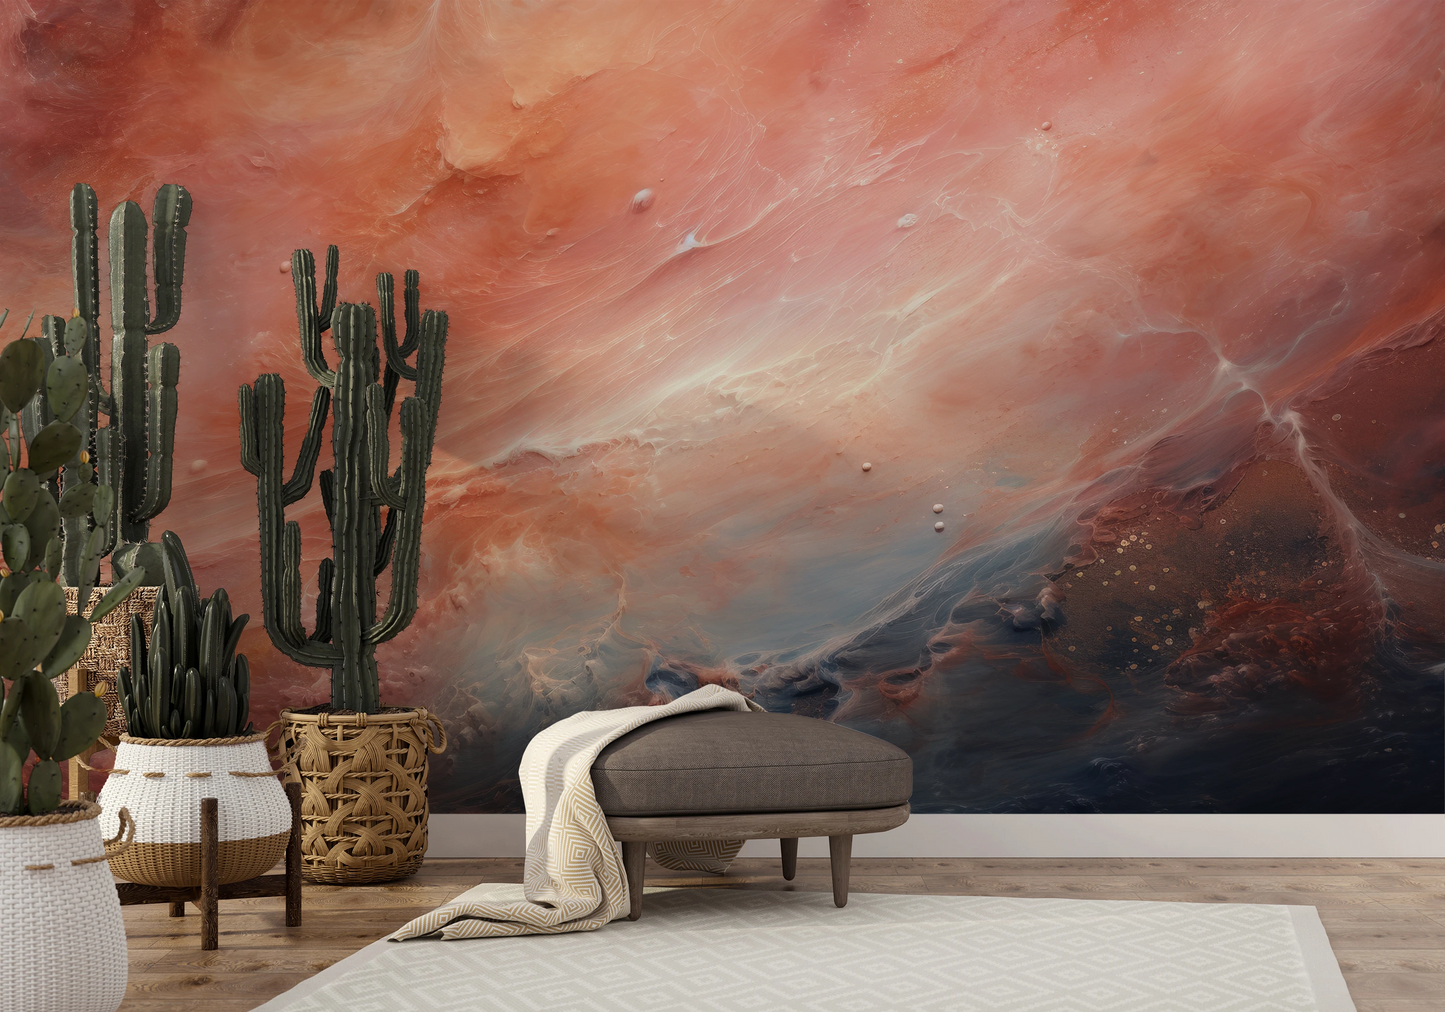 Fototapeta artystyczna o nazwie Venusian Skies pokazana w aranżacji wnętrza.